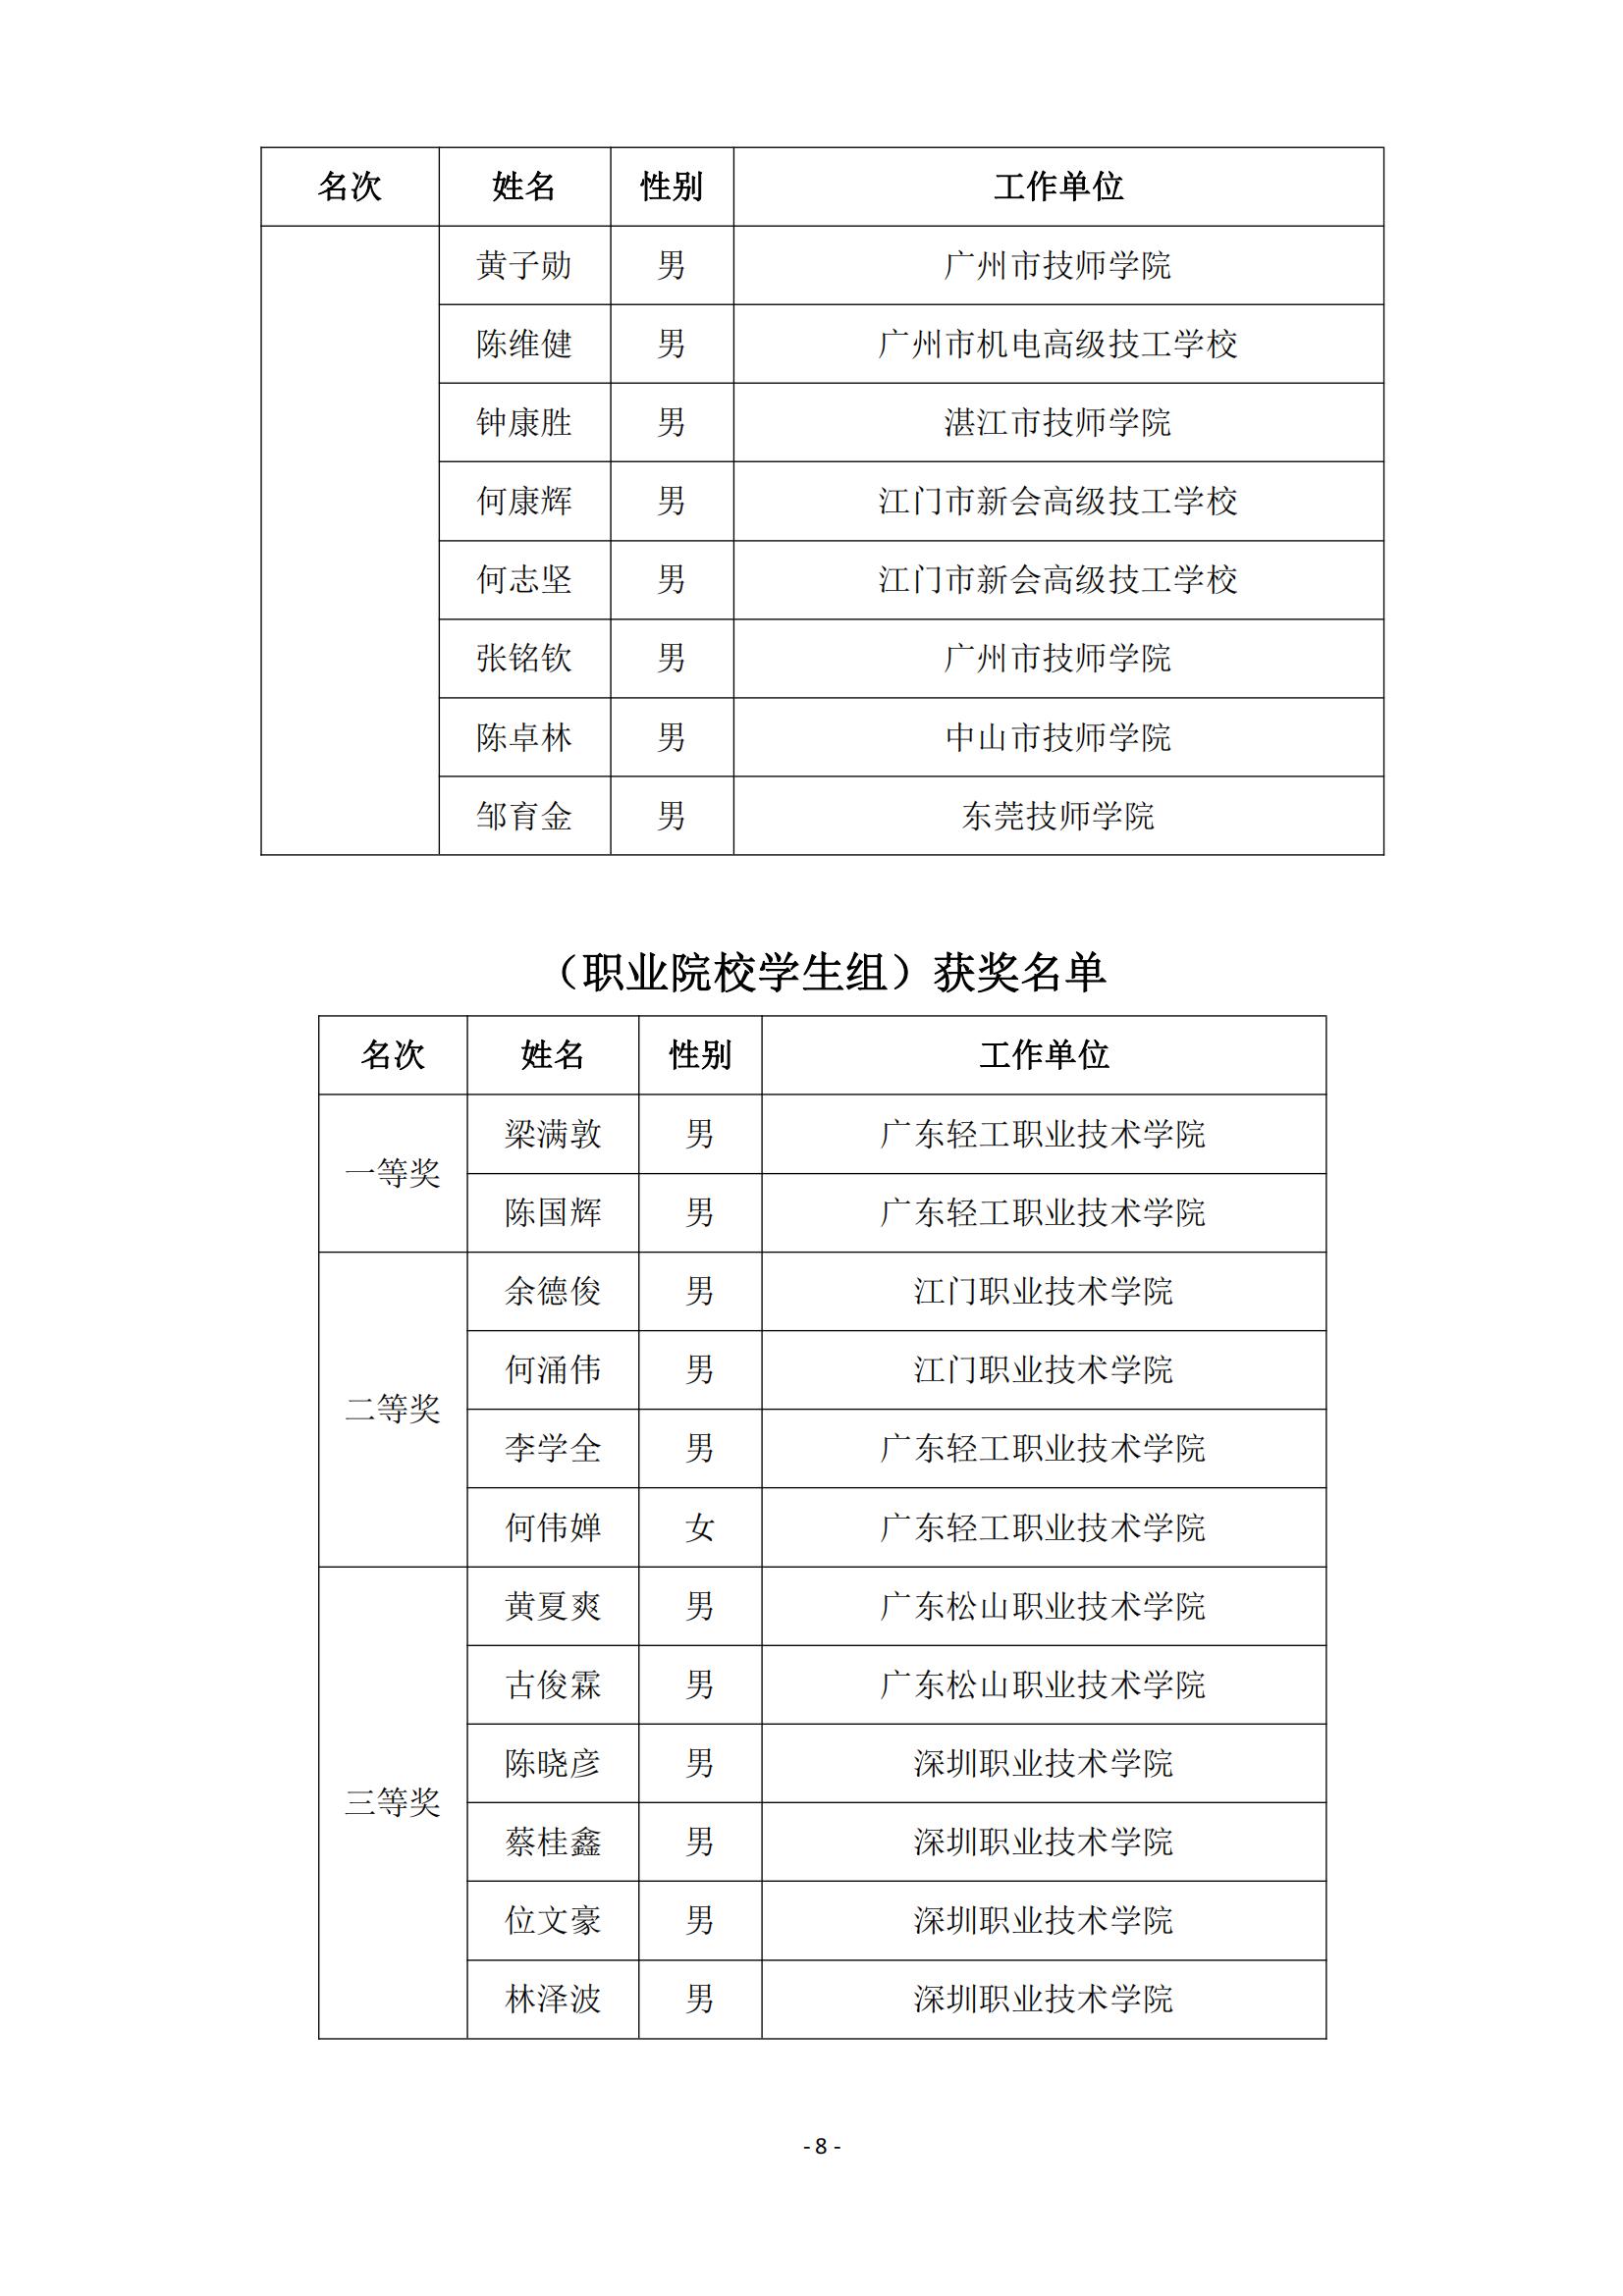 2015 年中国技能大赛--广东省机电一体化职业技能竞赛_07.jpg